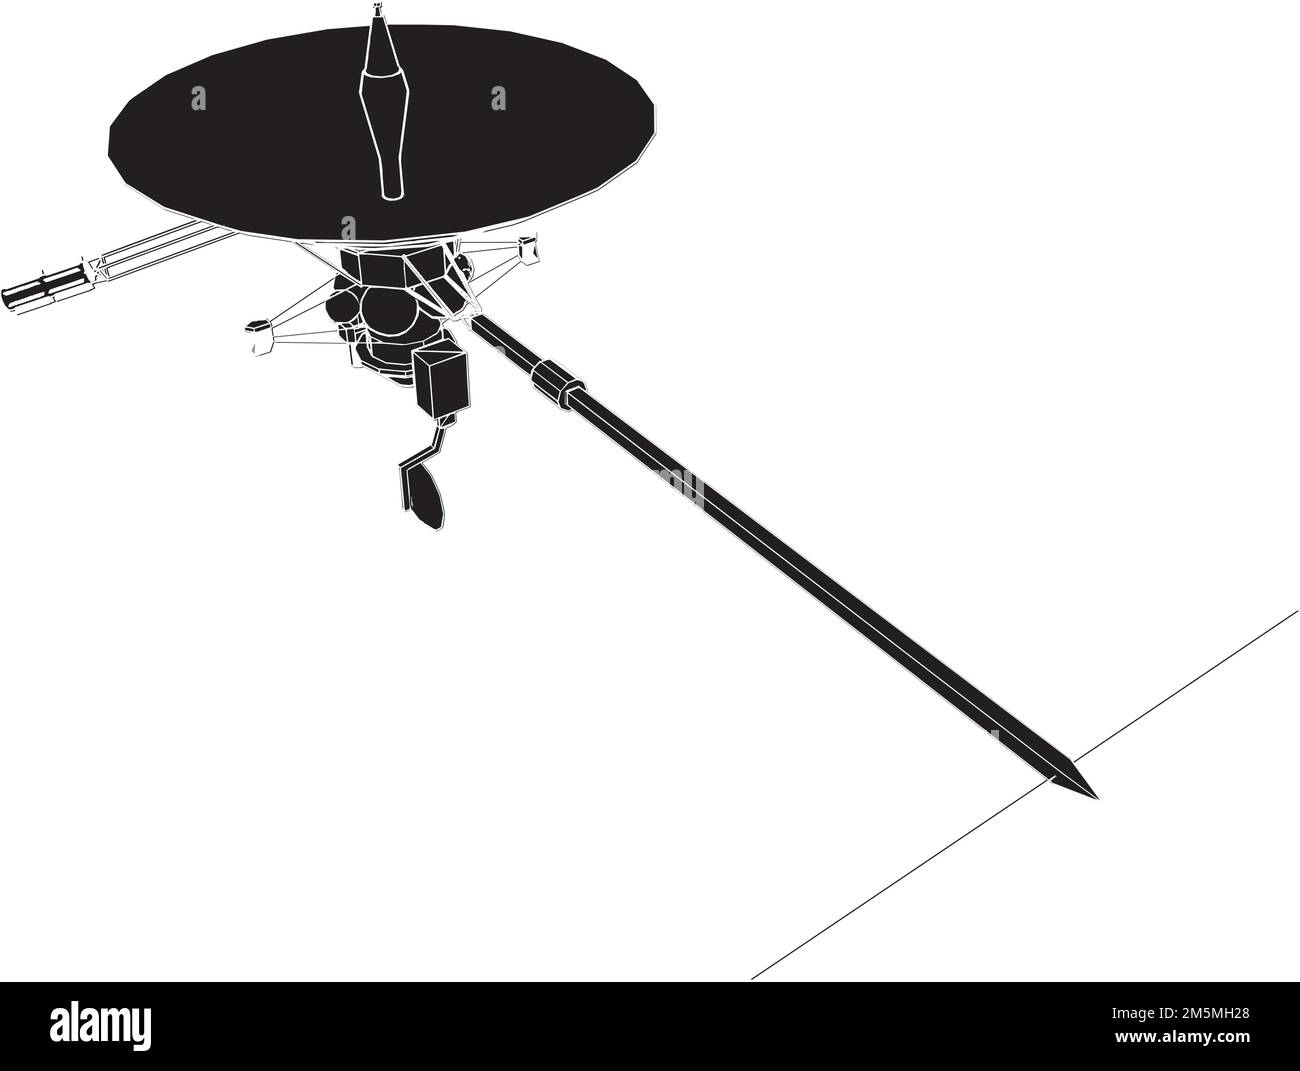 Vettore satellitare. Illustrazione su sfondo bianco. Illustrazione vettoriale di Un satellite. Illustrazione Vettoriale